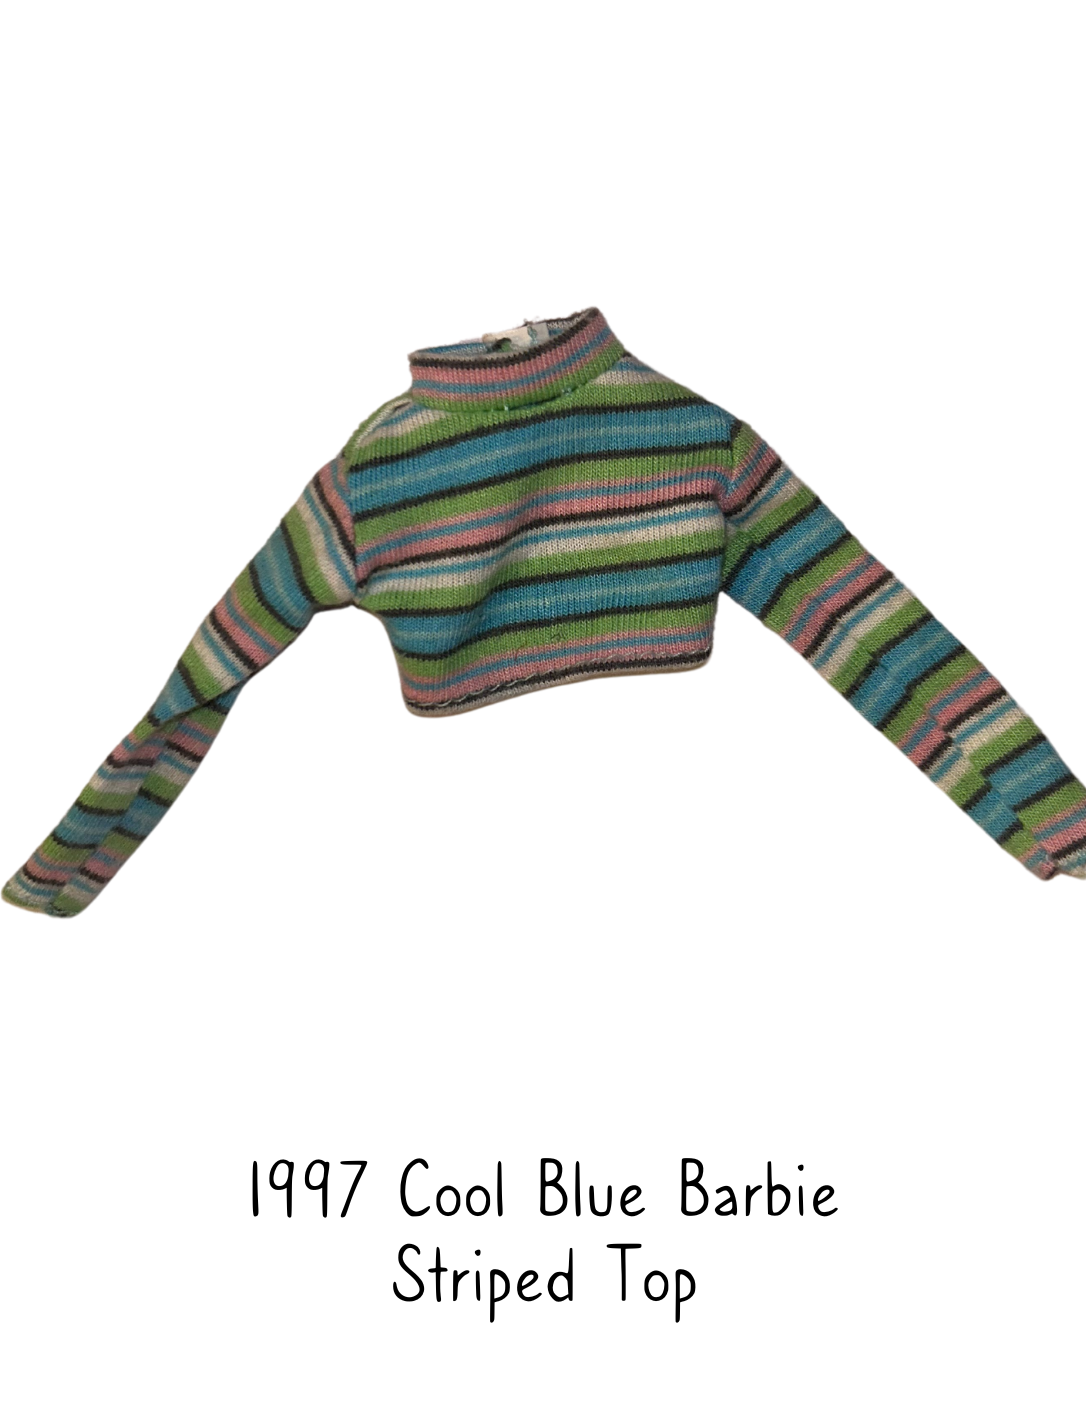 1998 Cool Blue Barbie Striped Top